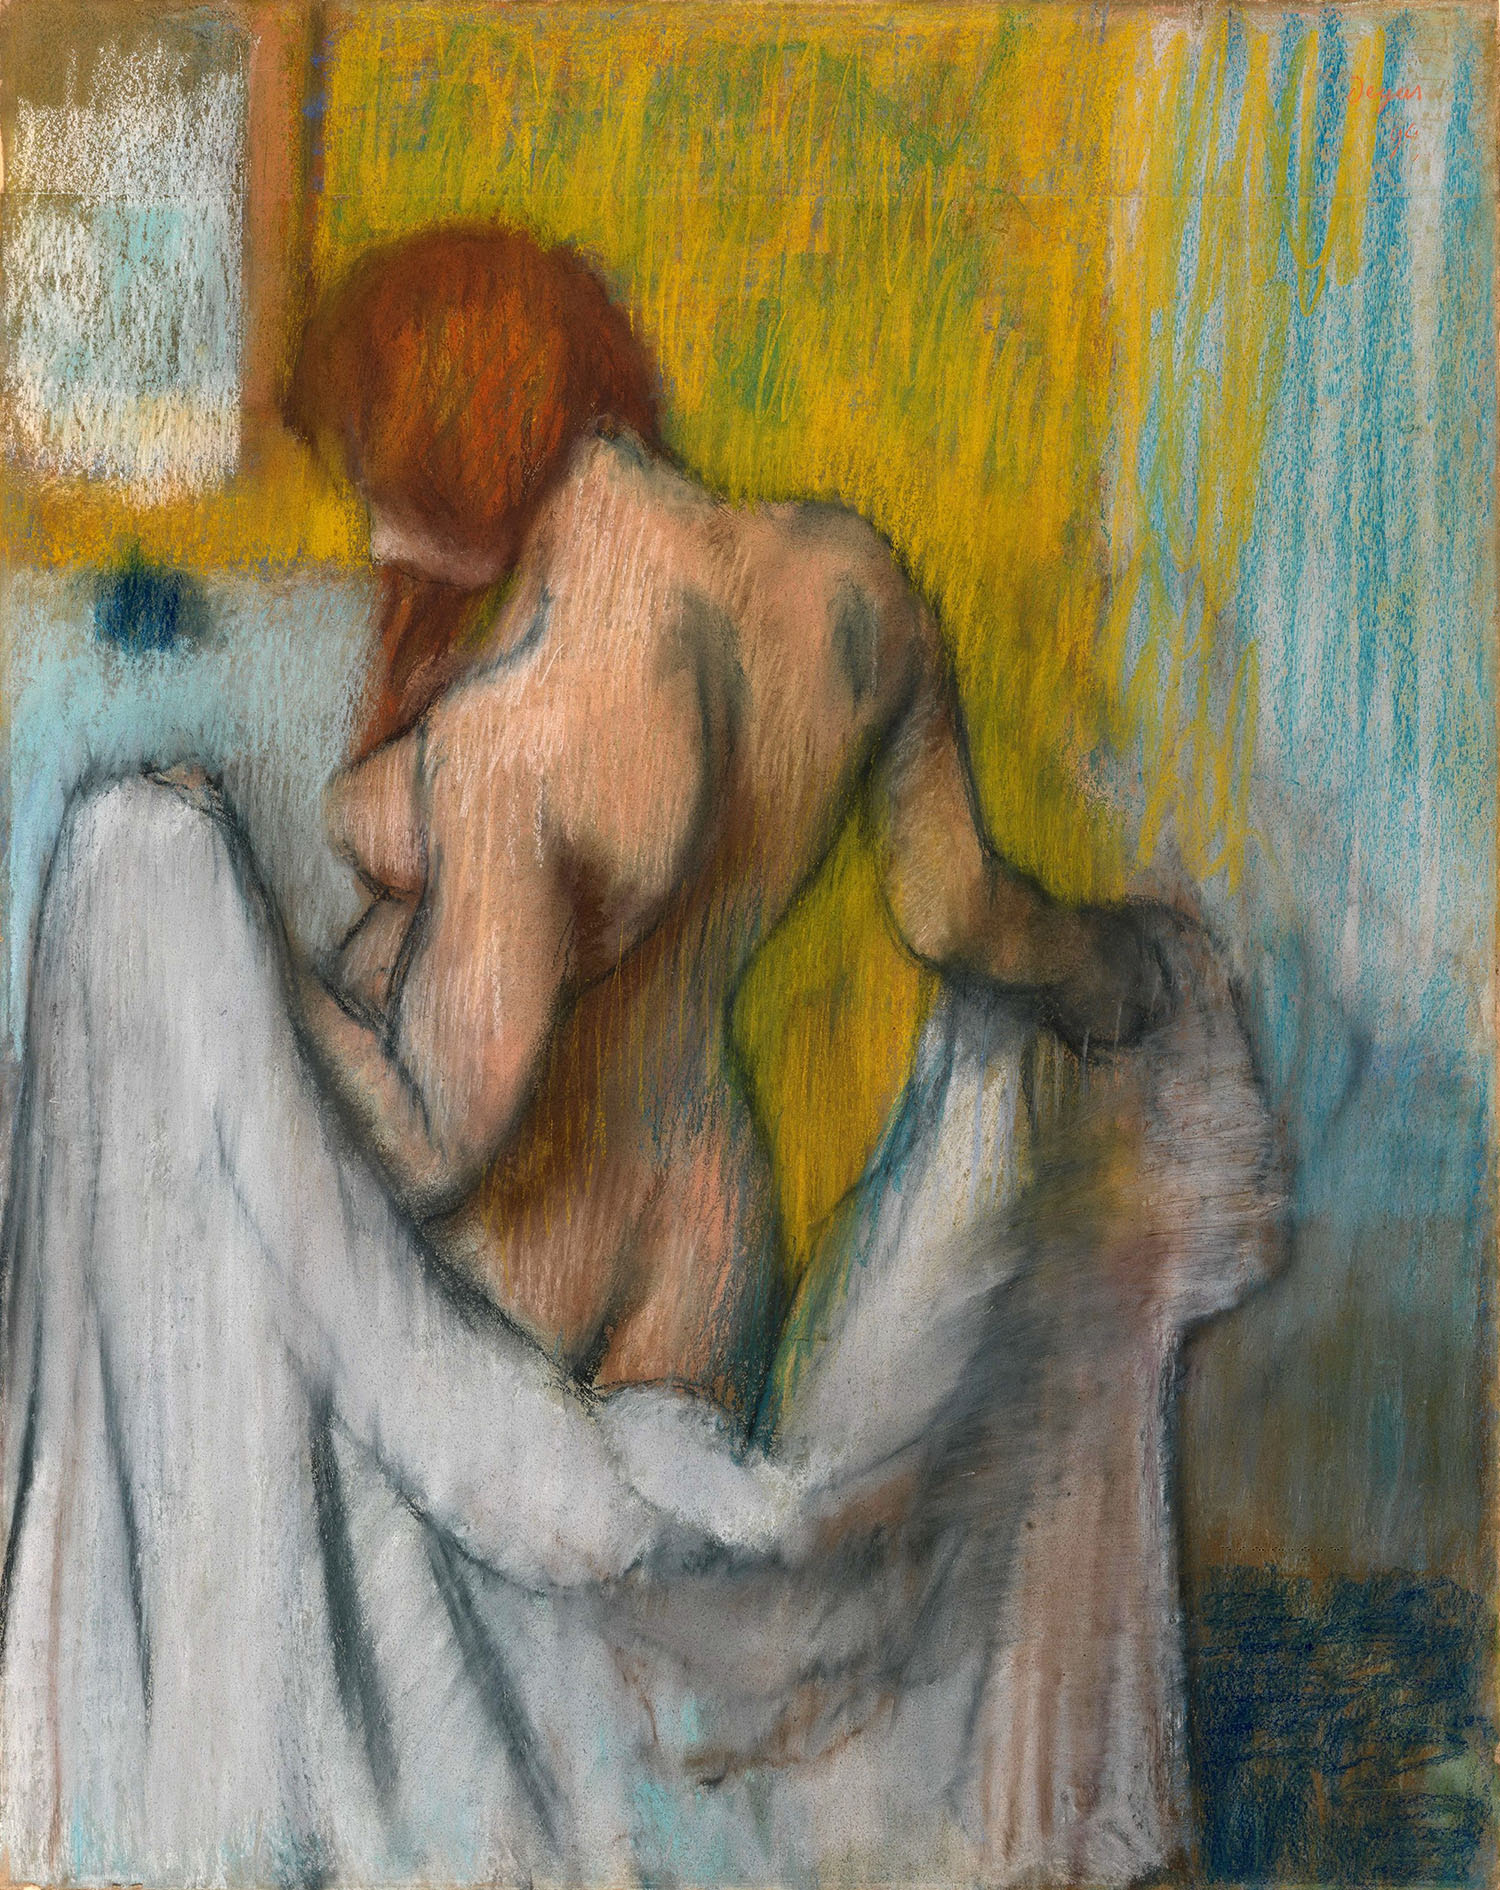 Эдгар Дега. "Женщина с полотенцем". 1894 или 1898.